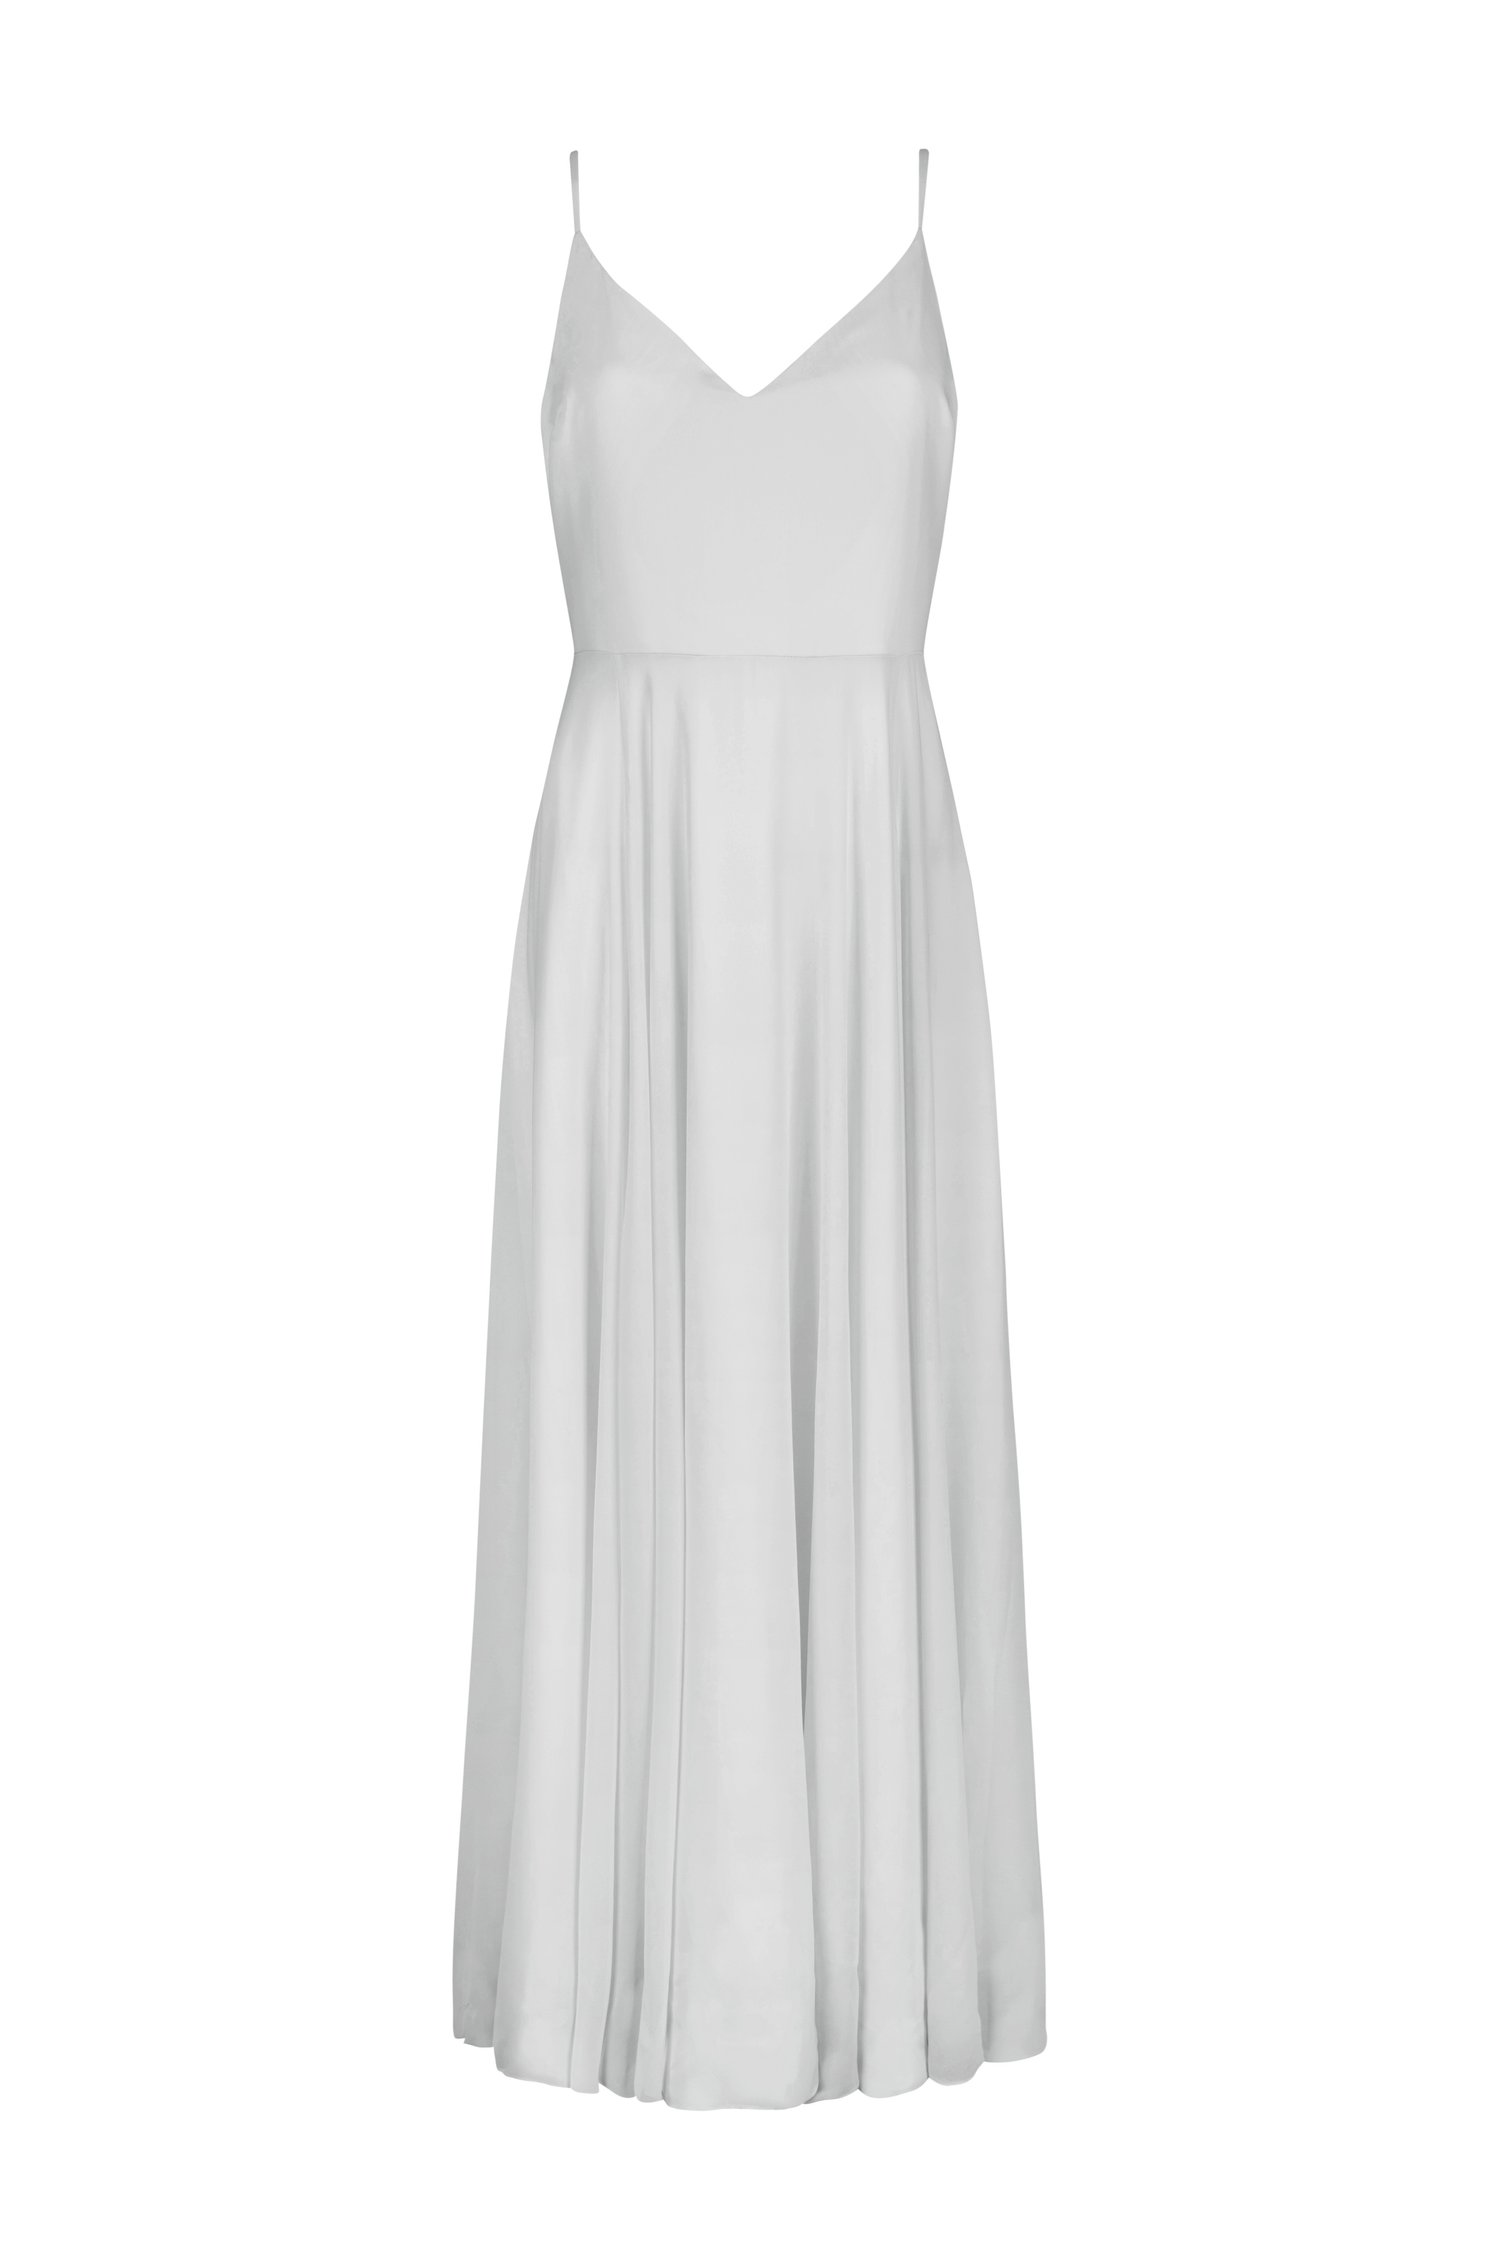 TH&TH Edie Bridesmaid Dress in Silver Mist — TH&TH